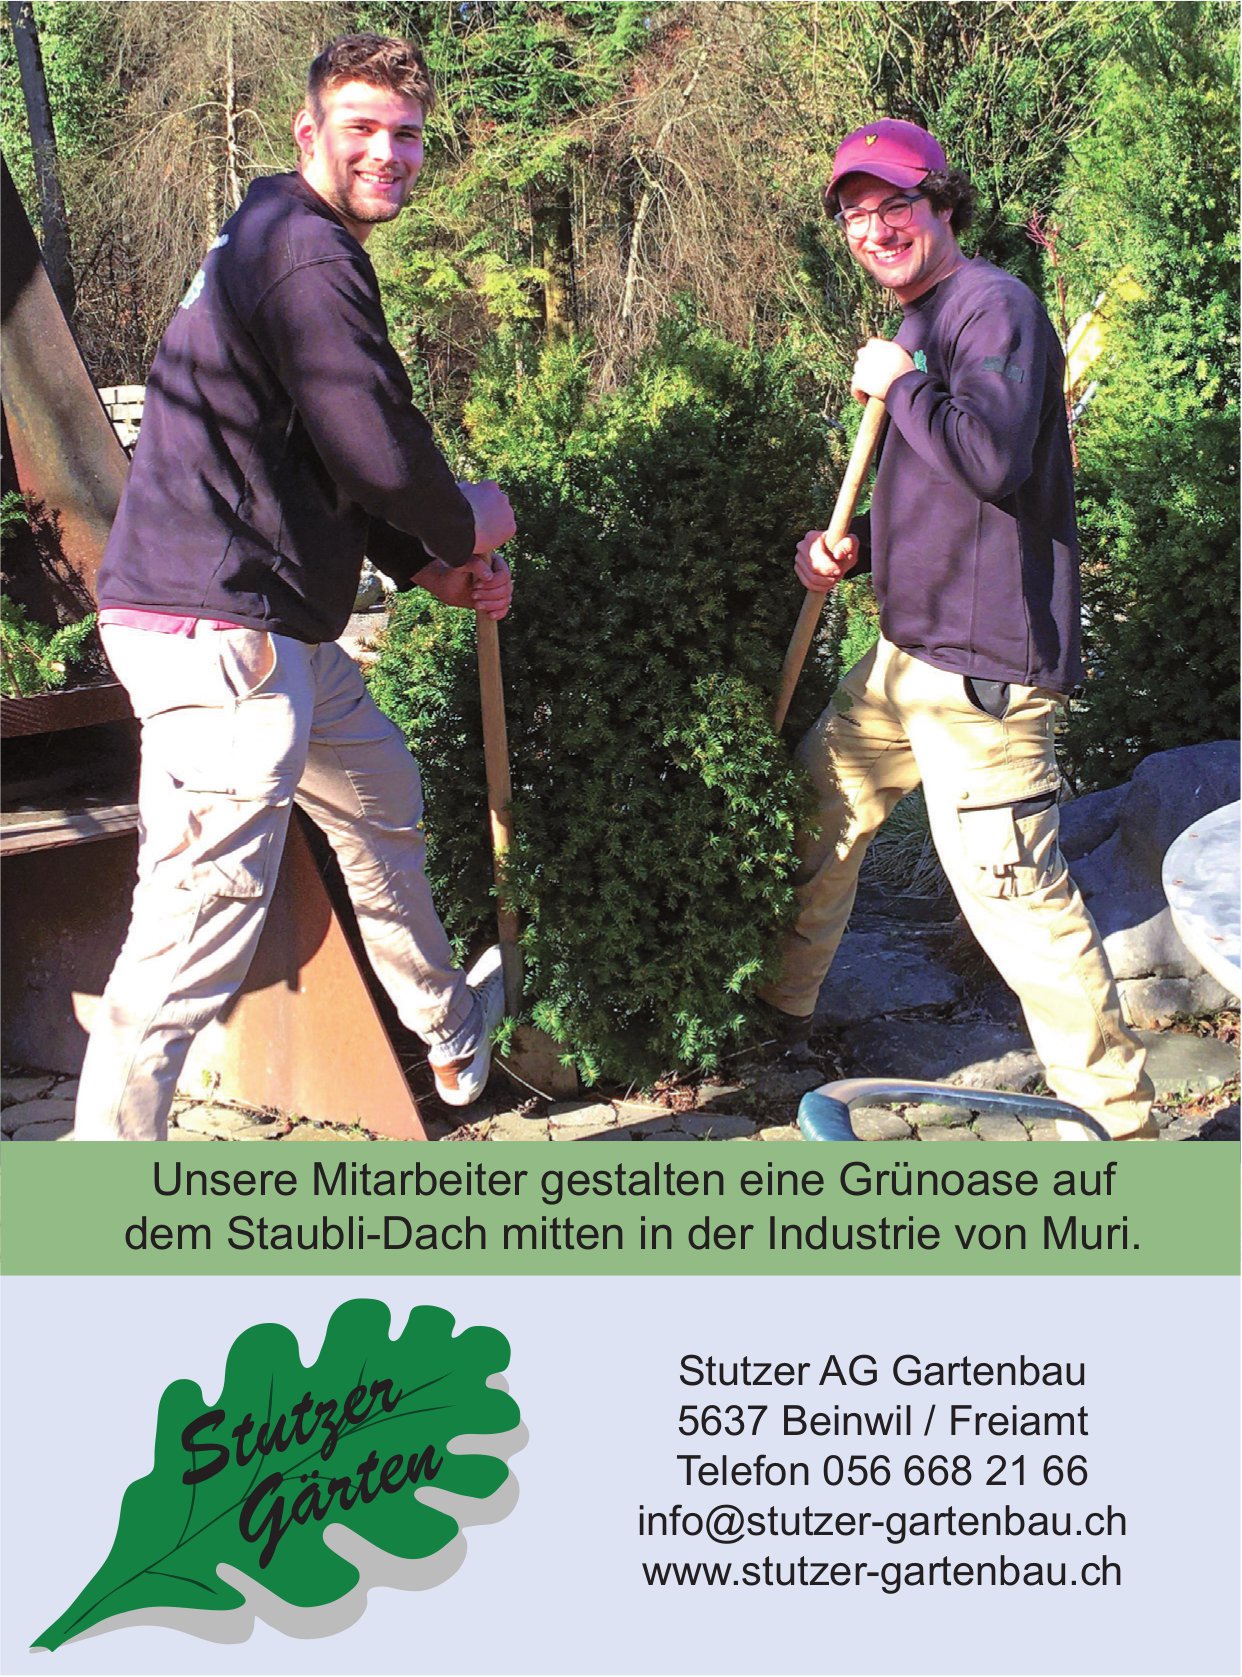 Stutzer AG Gartenbau, Beinwil - Unsere Mitarbeiter gestalten eine Grünoase auf dem Staubli-Dach